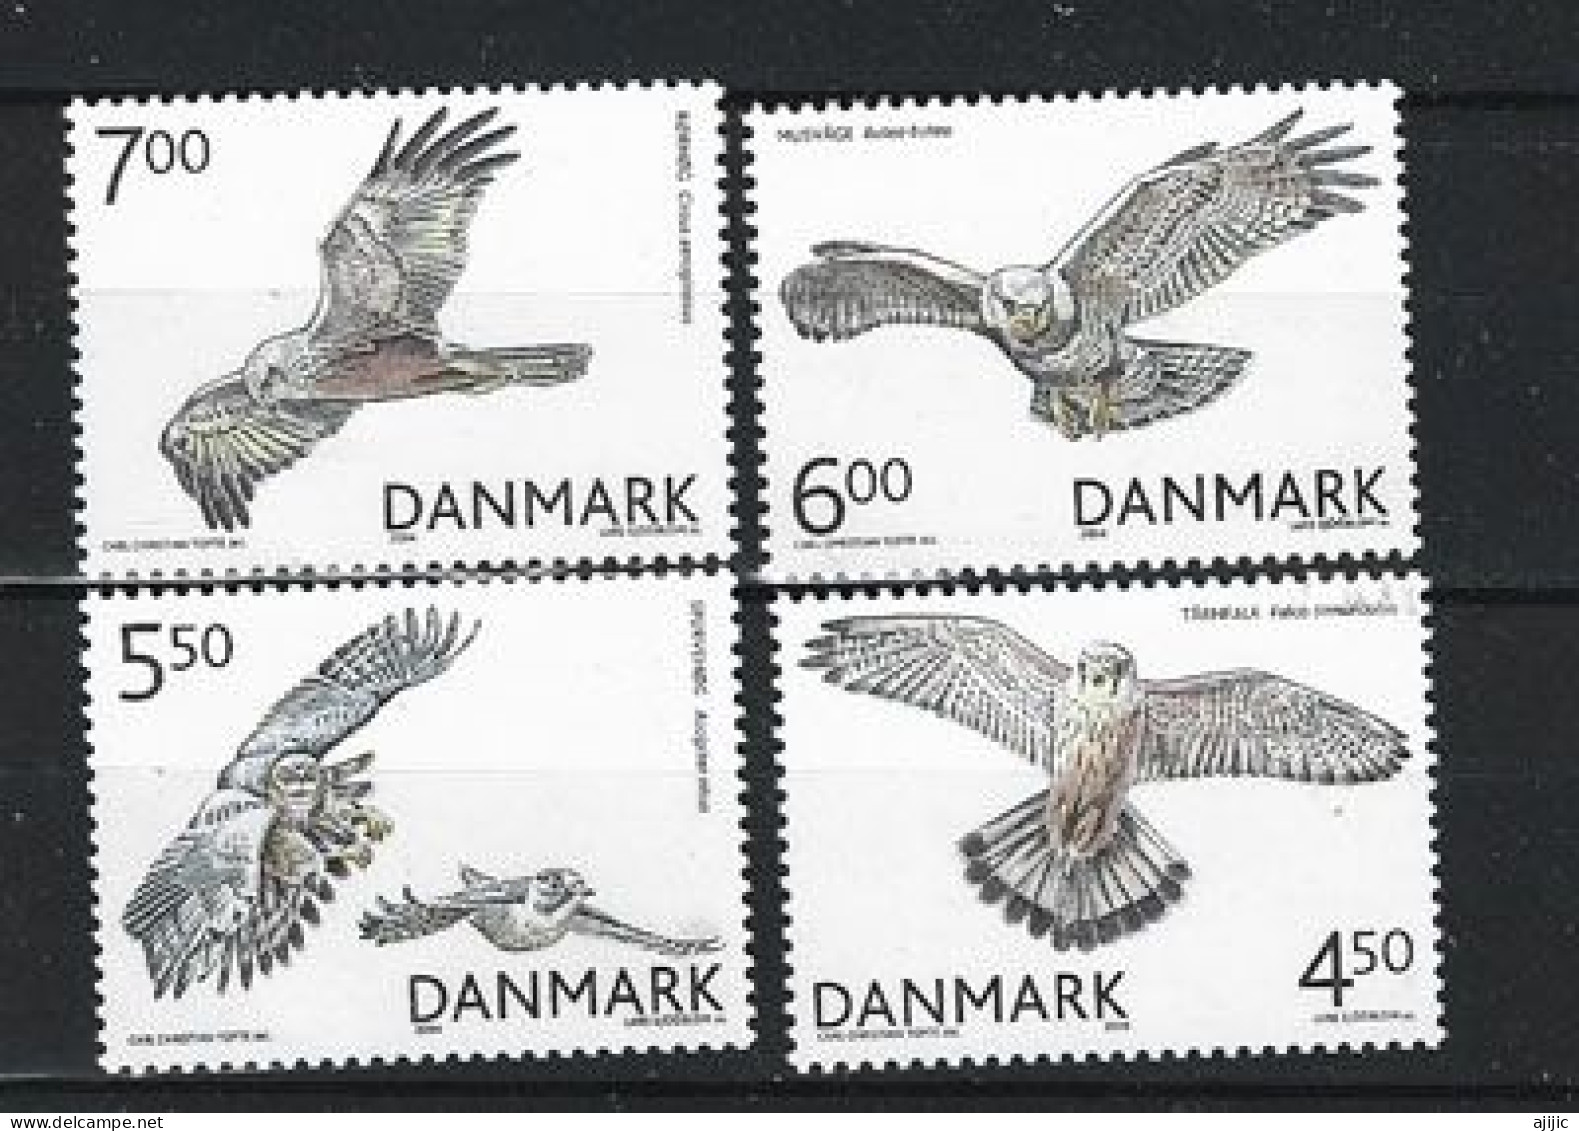 DANEMARK. Oiseaux De Proie / Rapaces Du Danemark. Série Complète 4 Timbres Neufs **  Année 2004 - Neufs